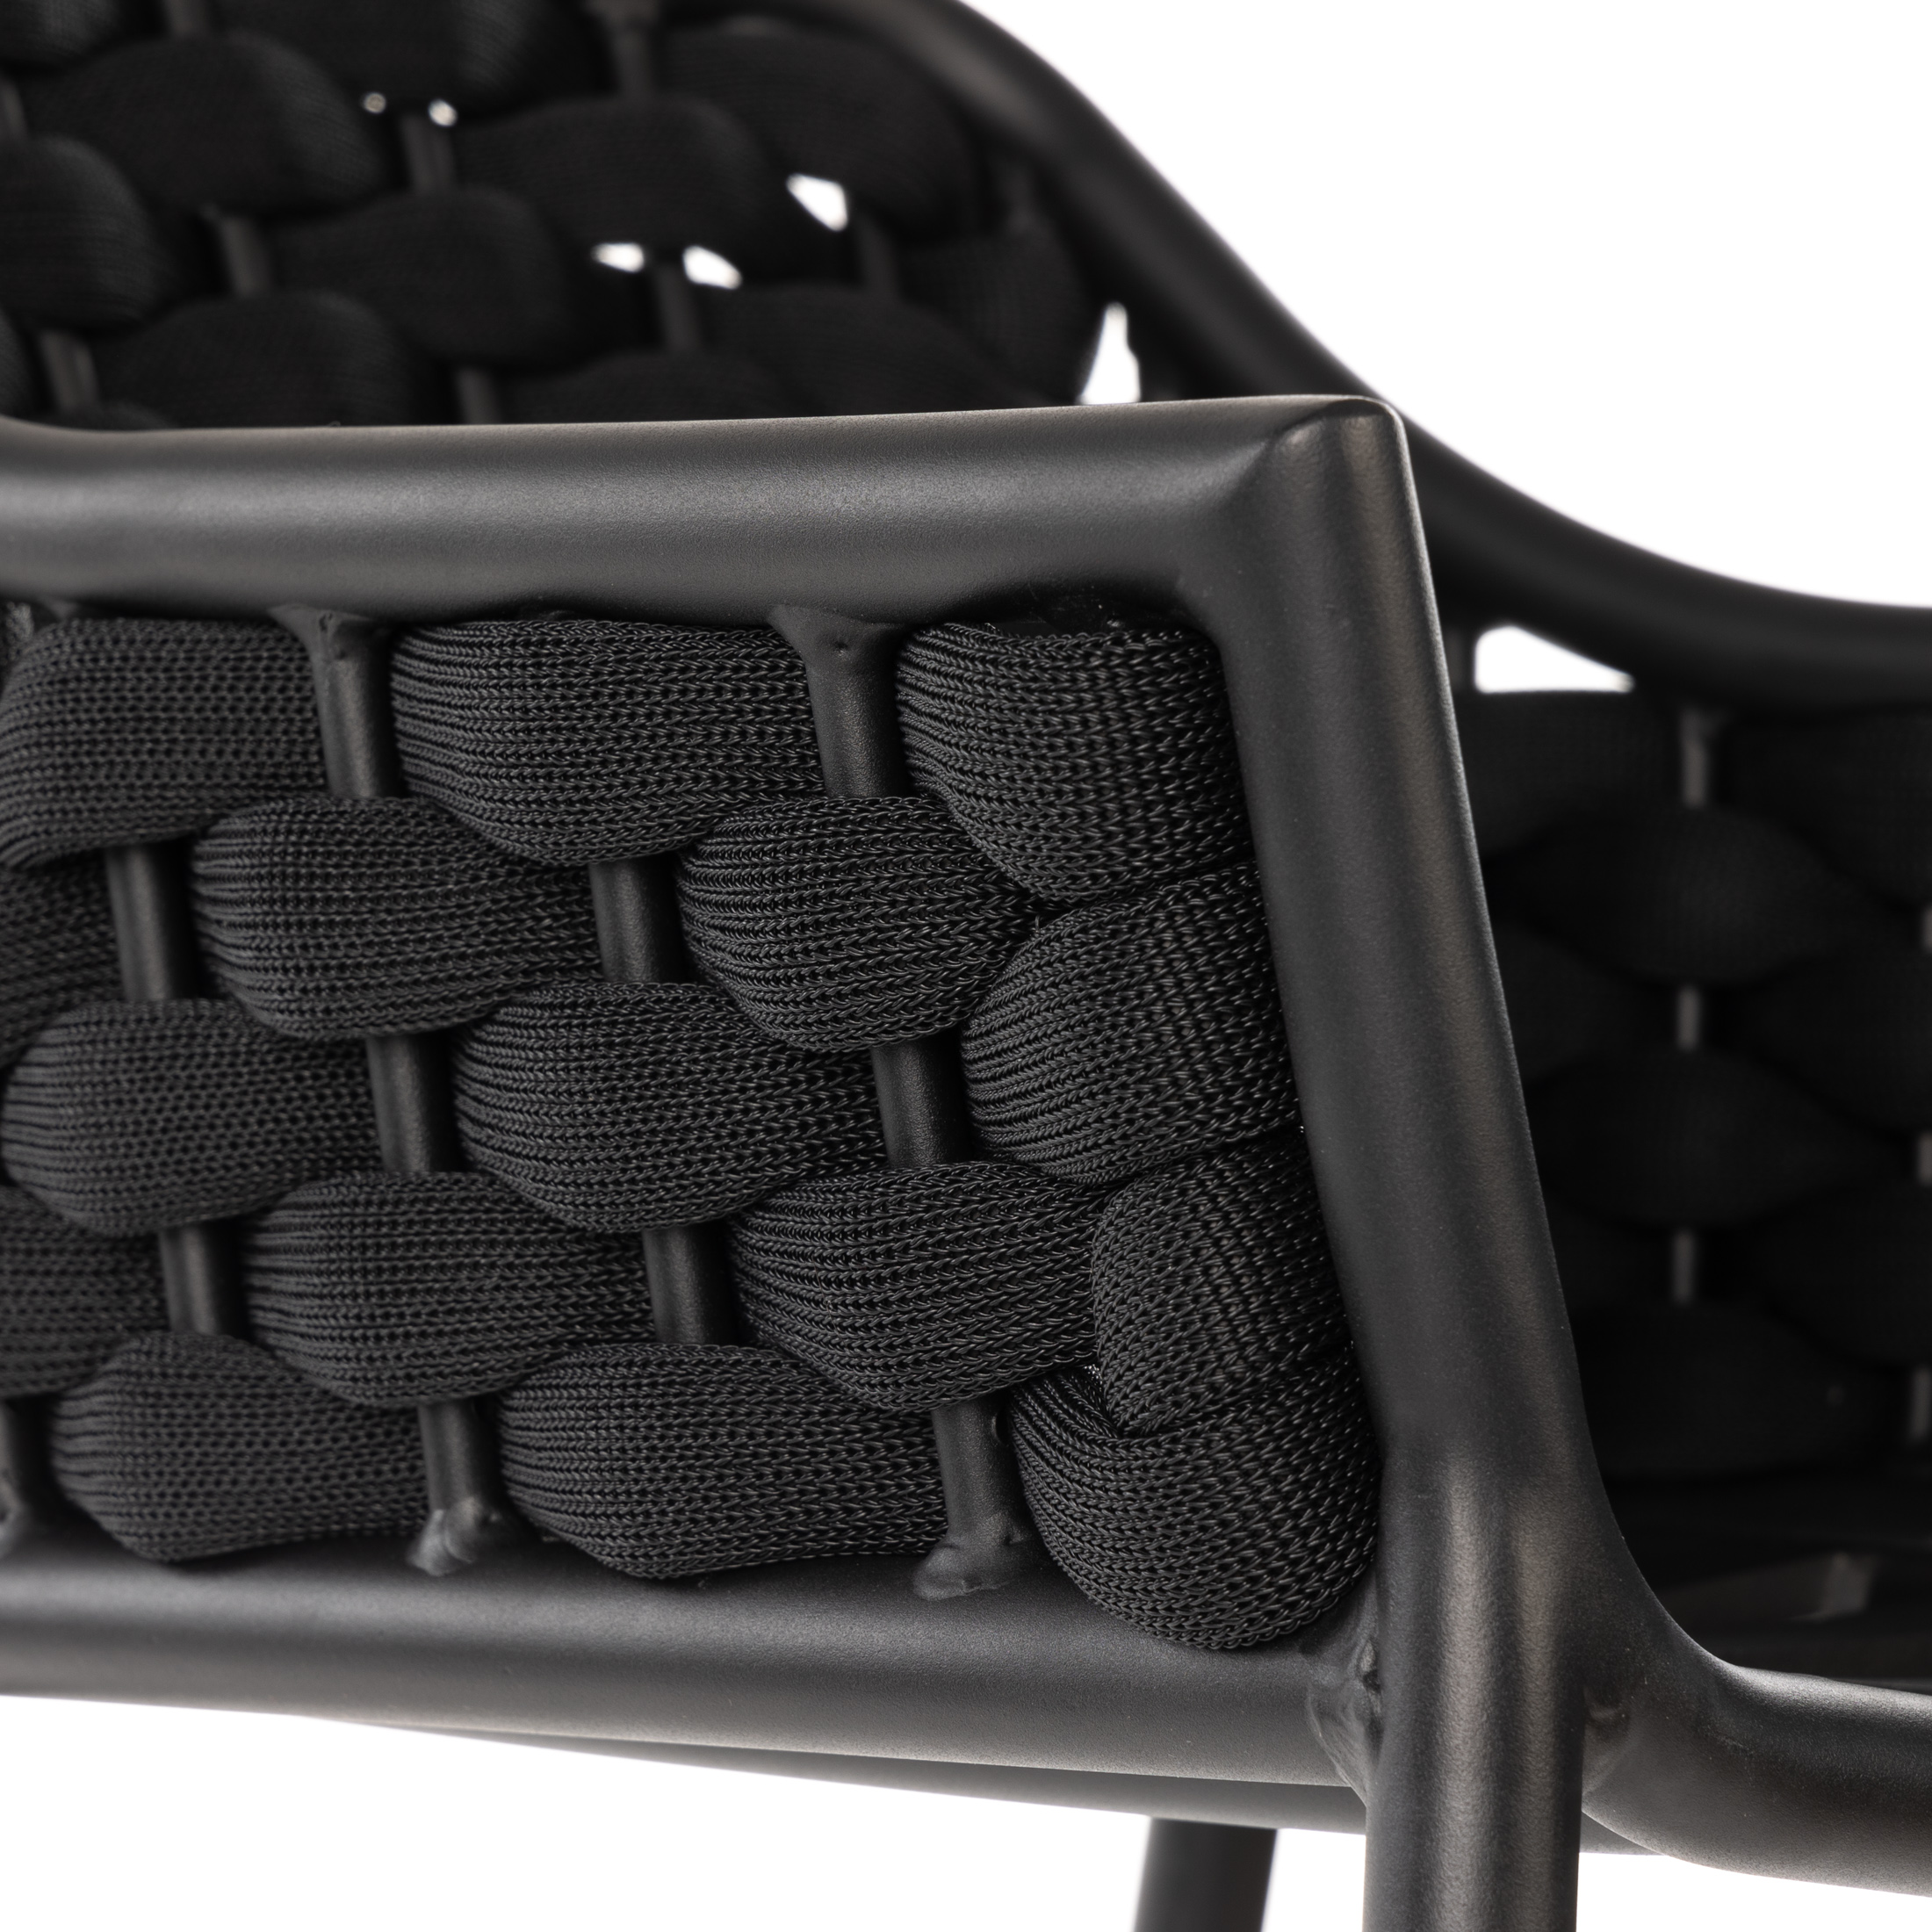 Outdoor Barhocker MIAMI - Seilgeflecht mit Textilene - stapelbar - schwarz/beige/schwarz